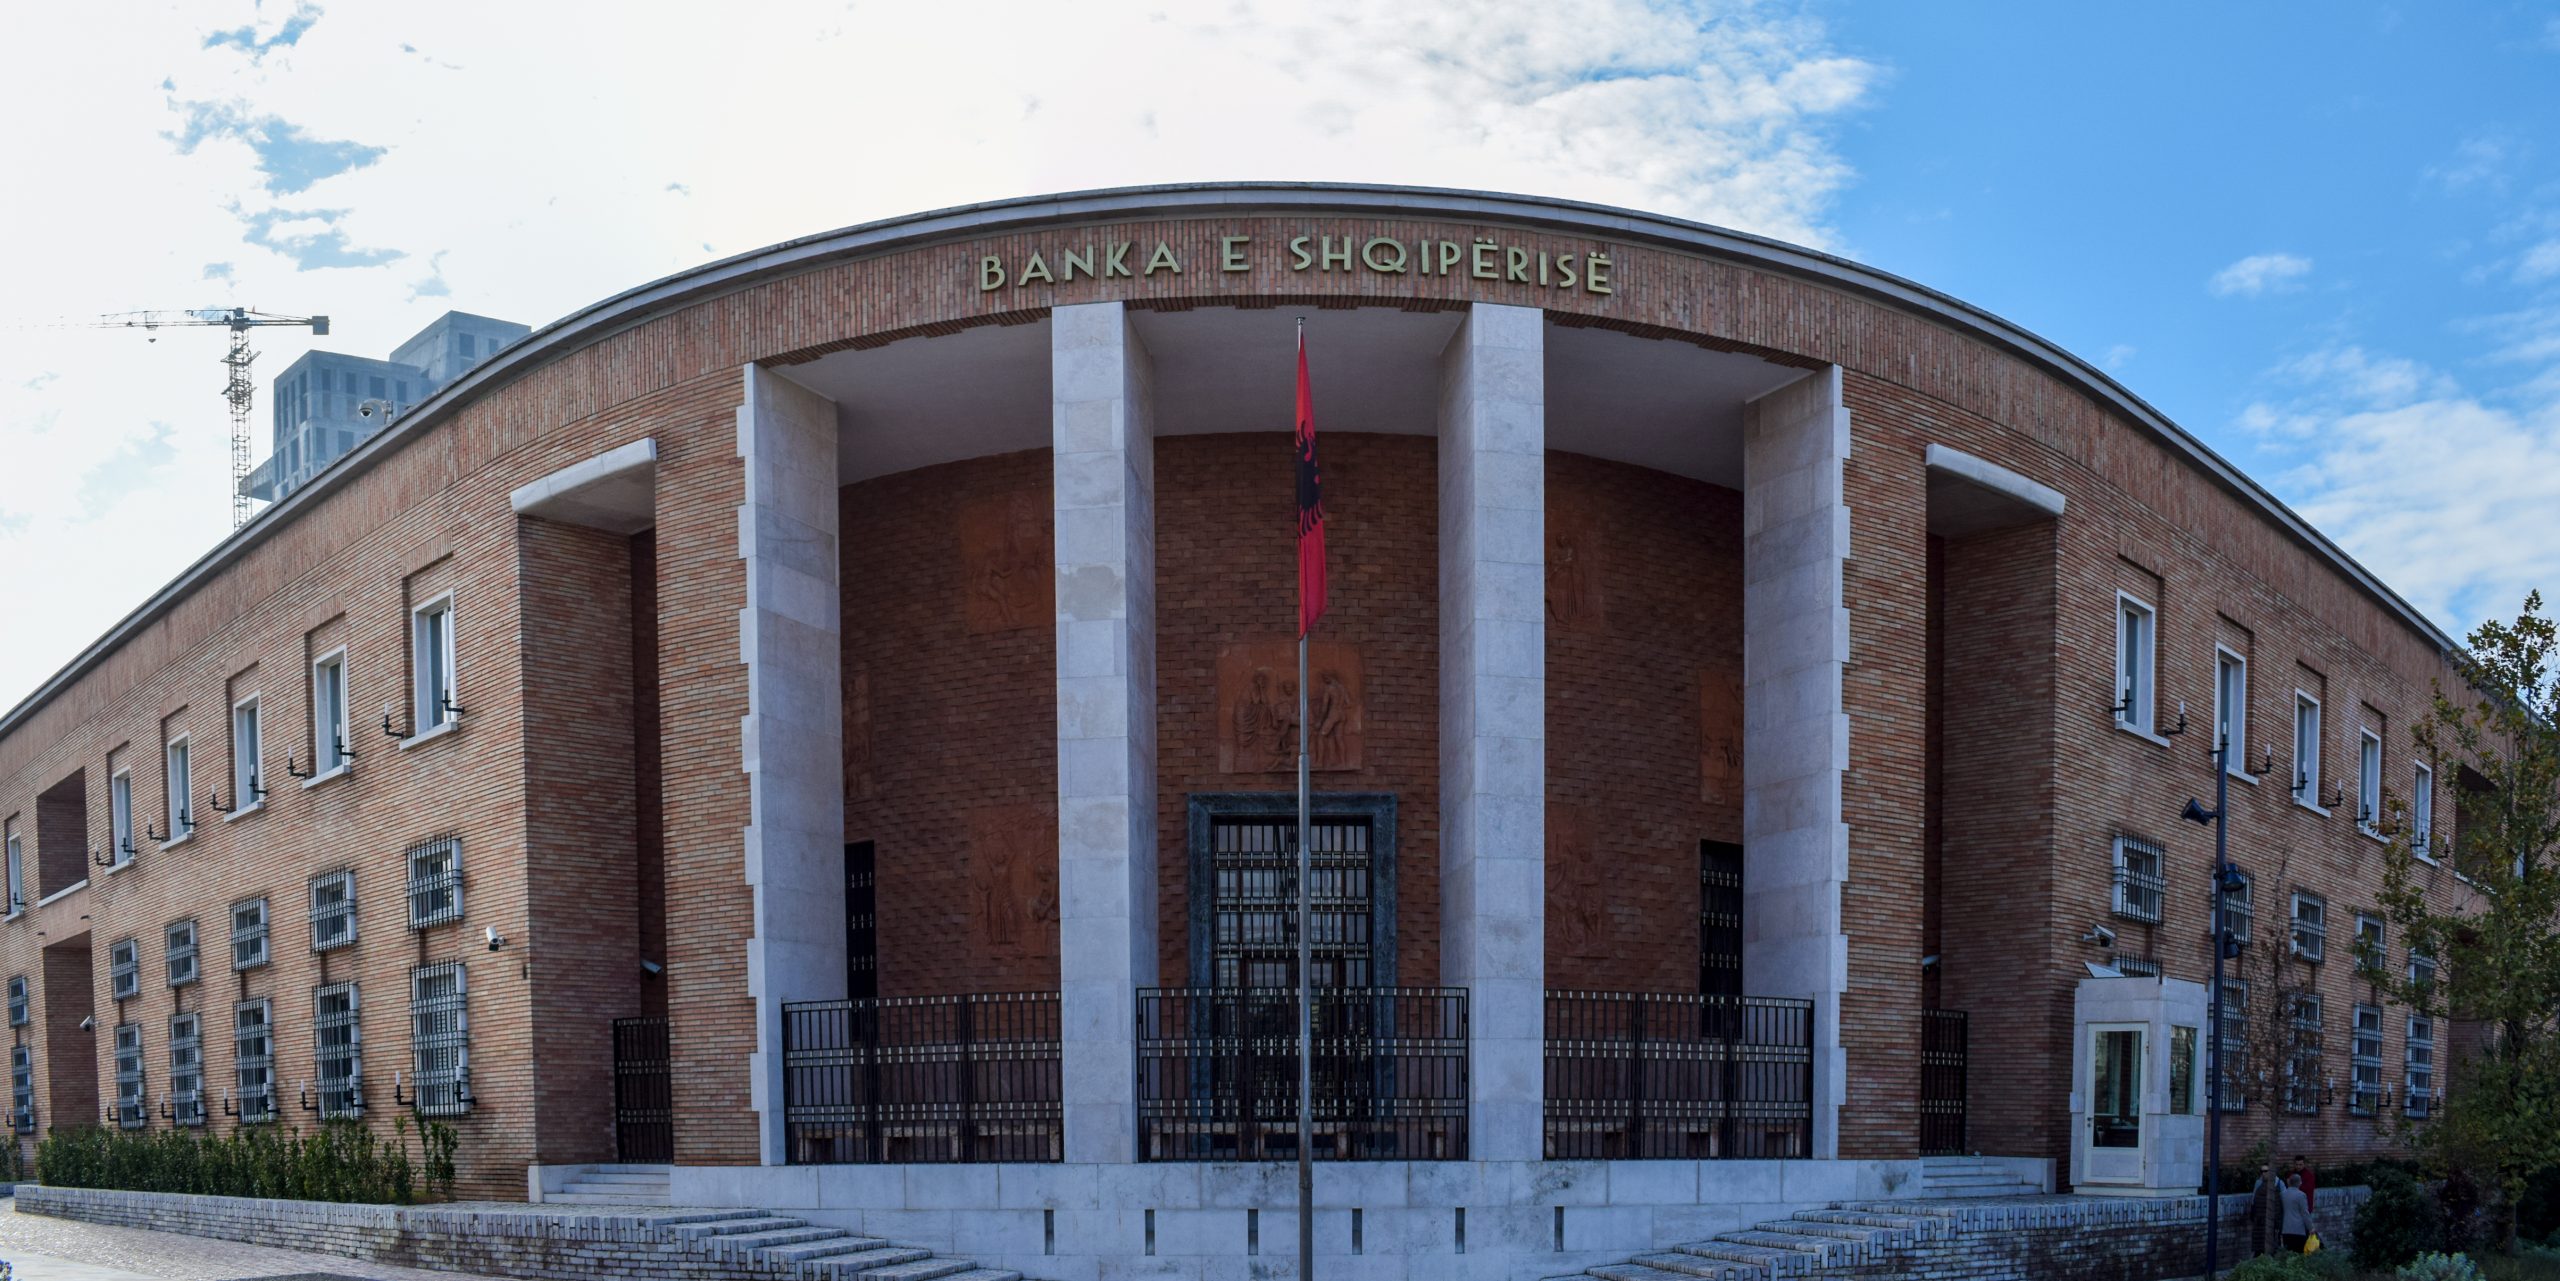 Banka e Shqipërisë: Të përmirësohet klima e biznesit